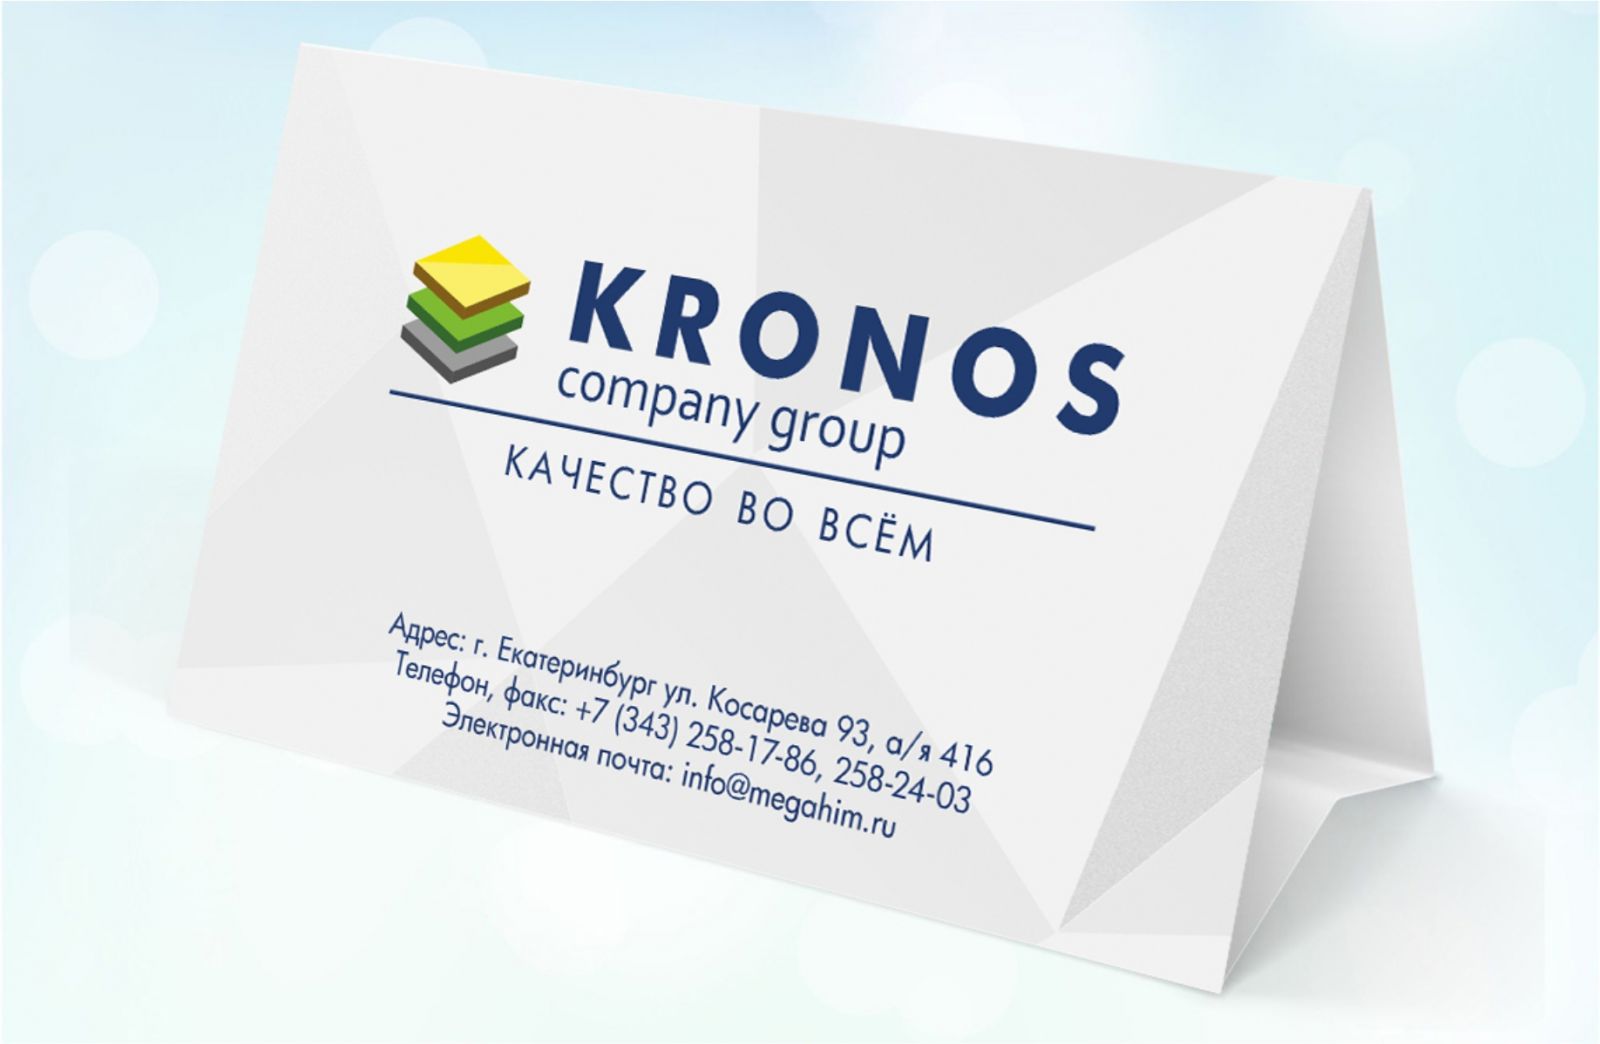 Реклама компании Kronos на обратной стороне календаря